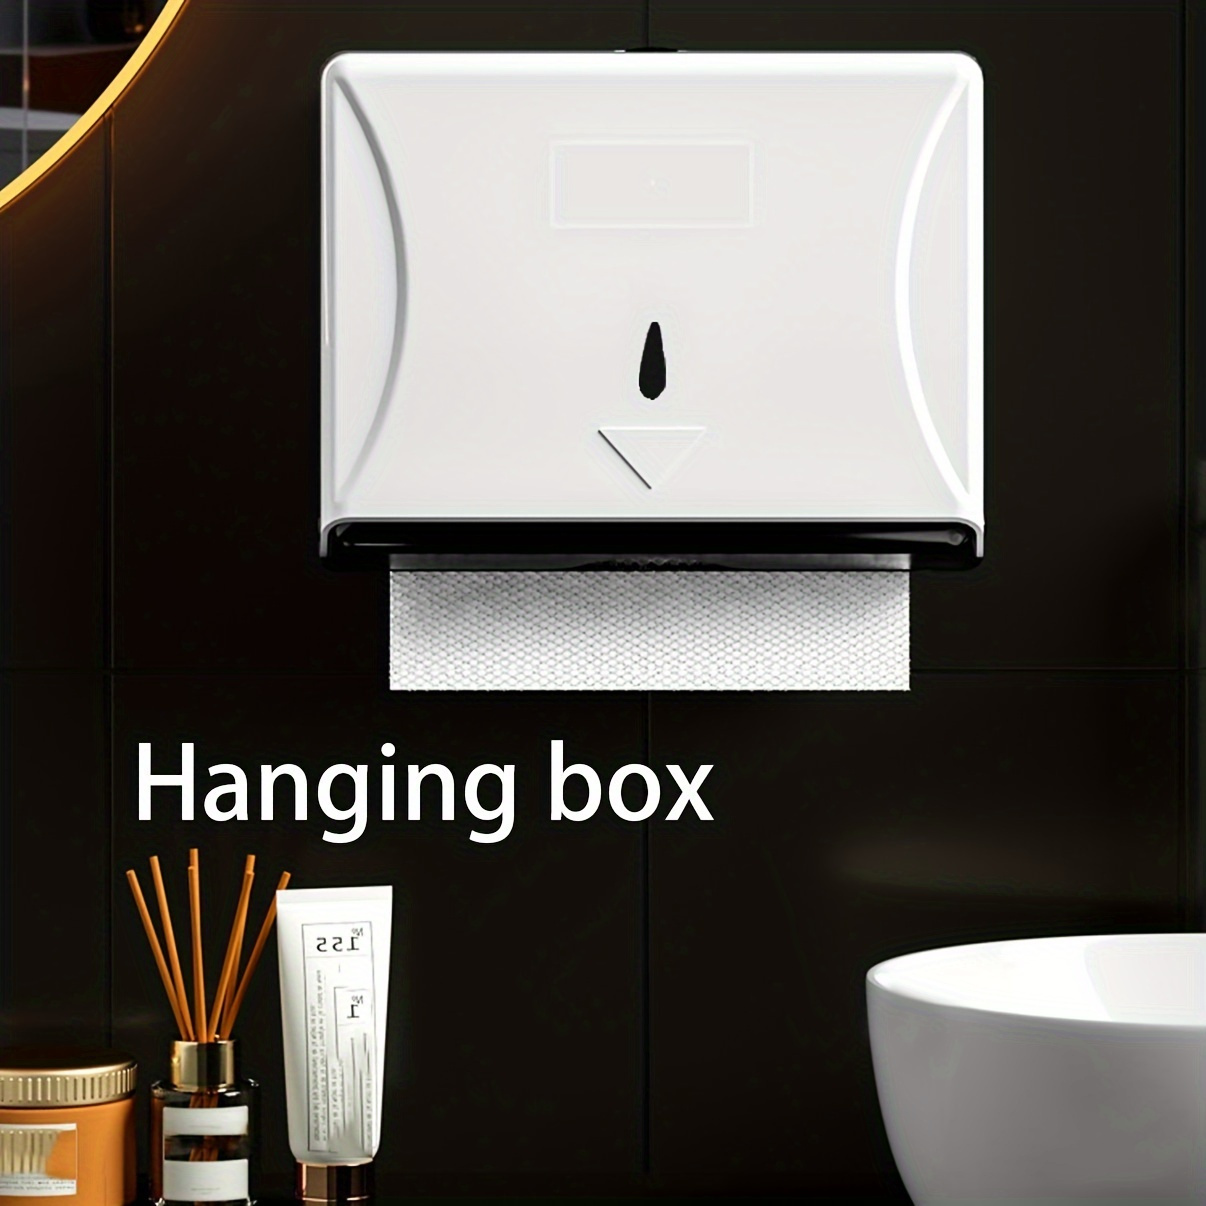 

1pc Wall-mounted Plastic Tissue Dispenser, Easy Install Paper Towel Holder For Bathroom, Kitchen, Restaurant, Hotel, White